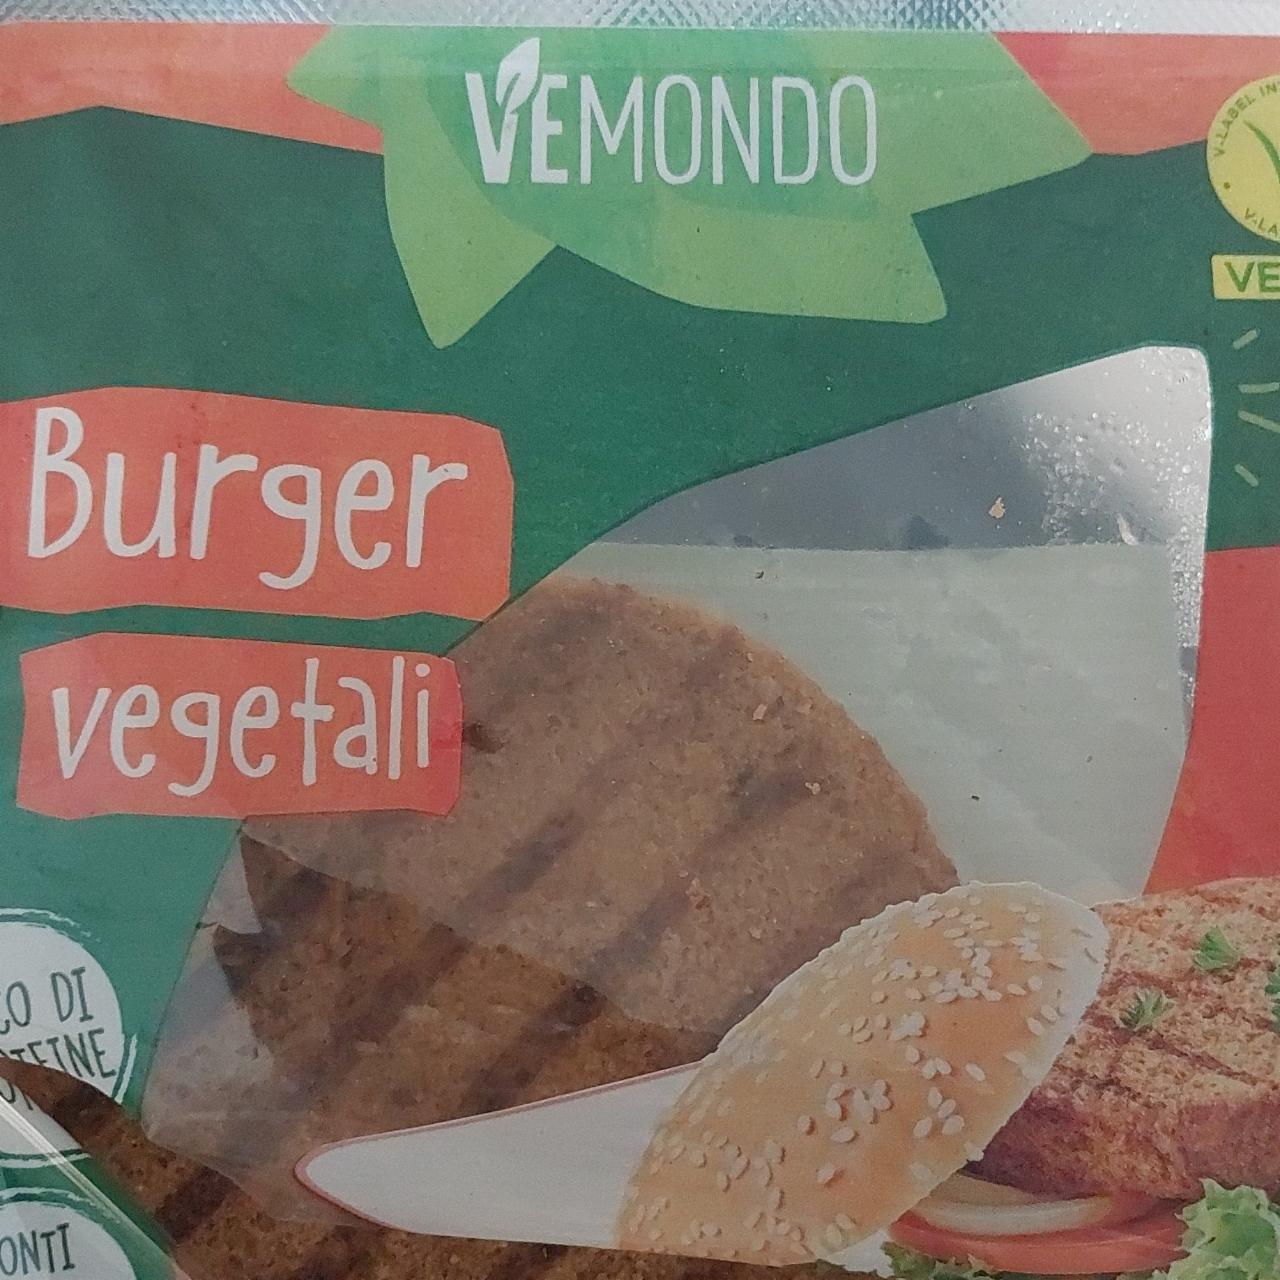 Zdjęcia - Burger vegetali Vemondo